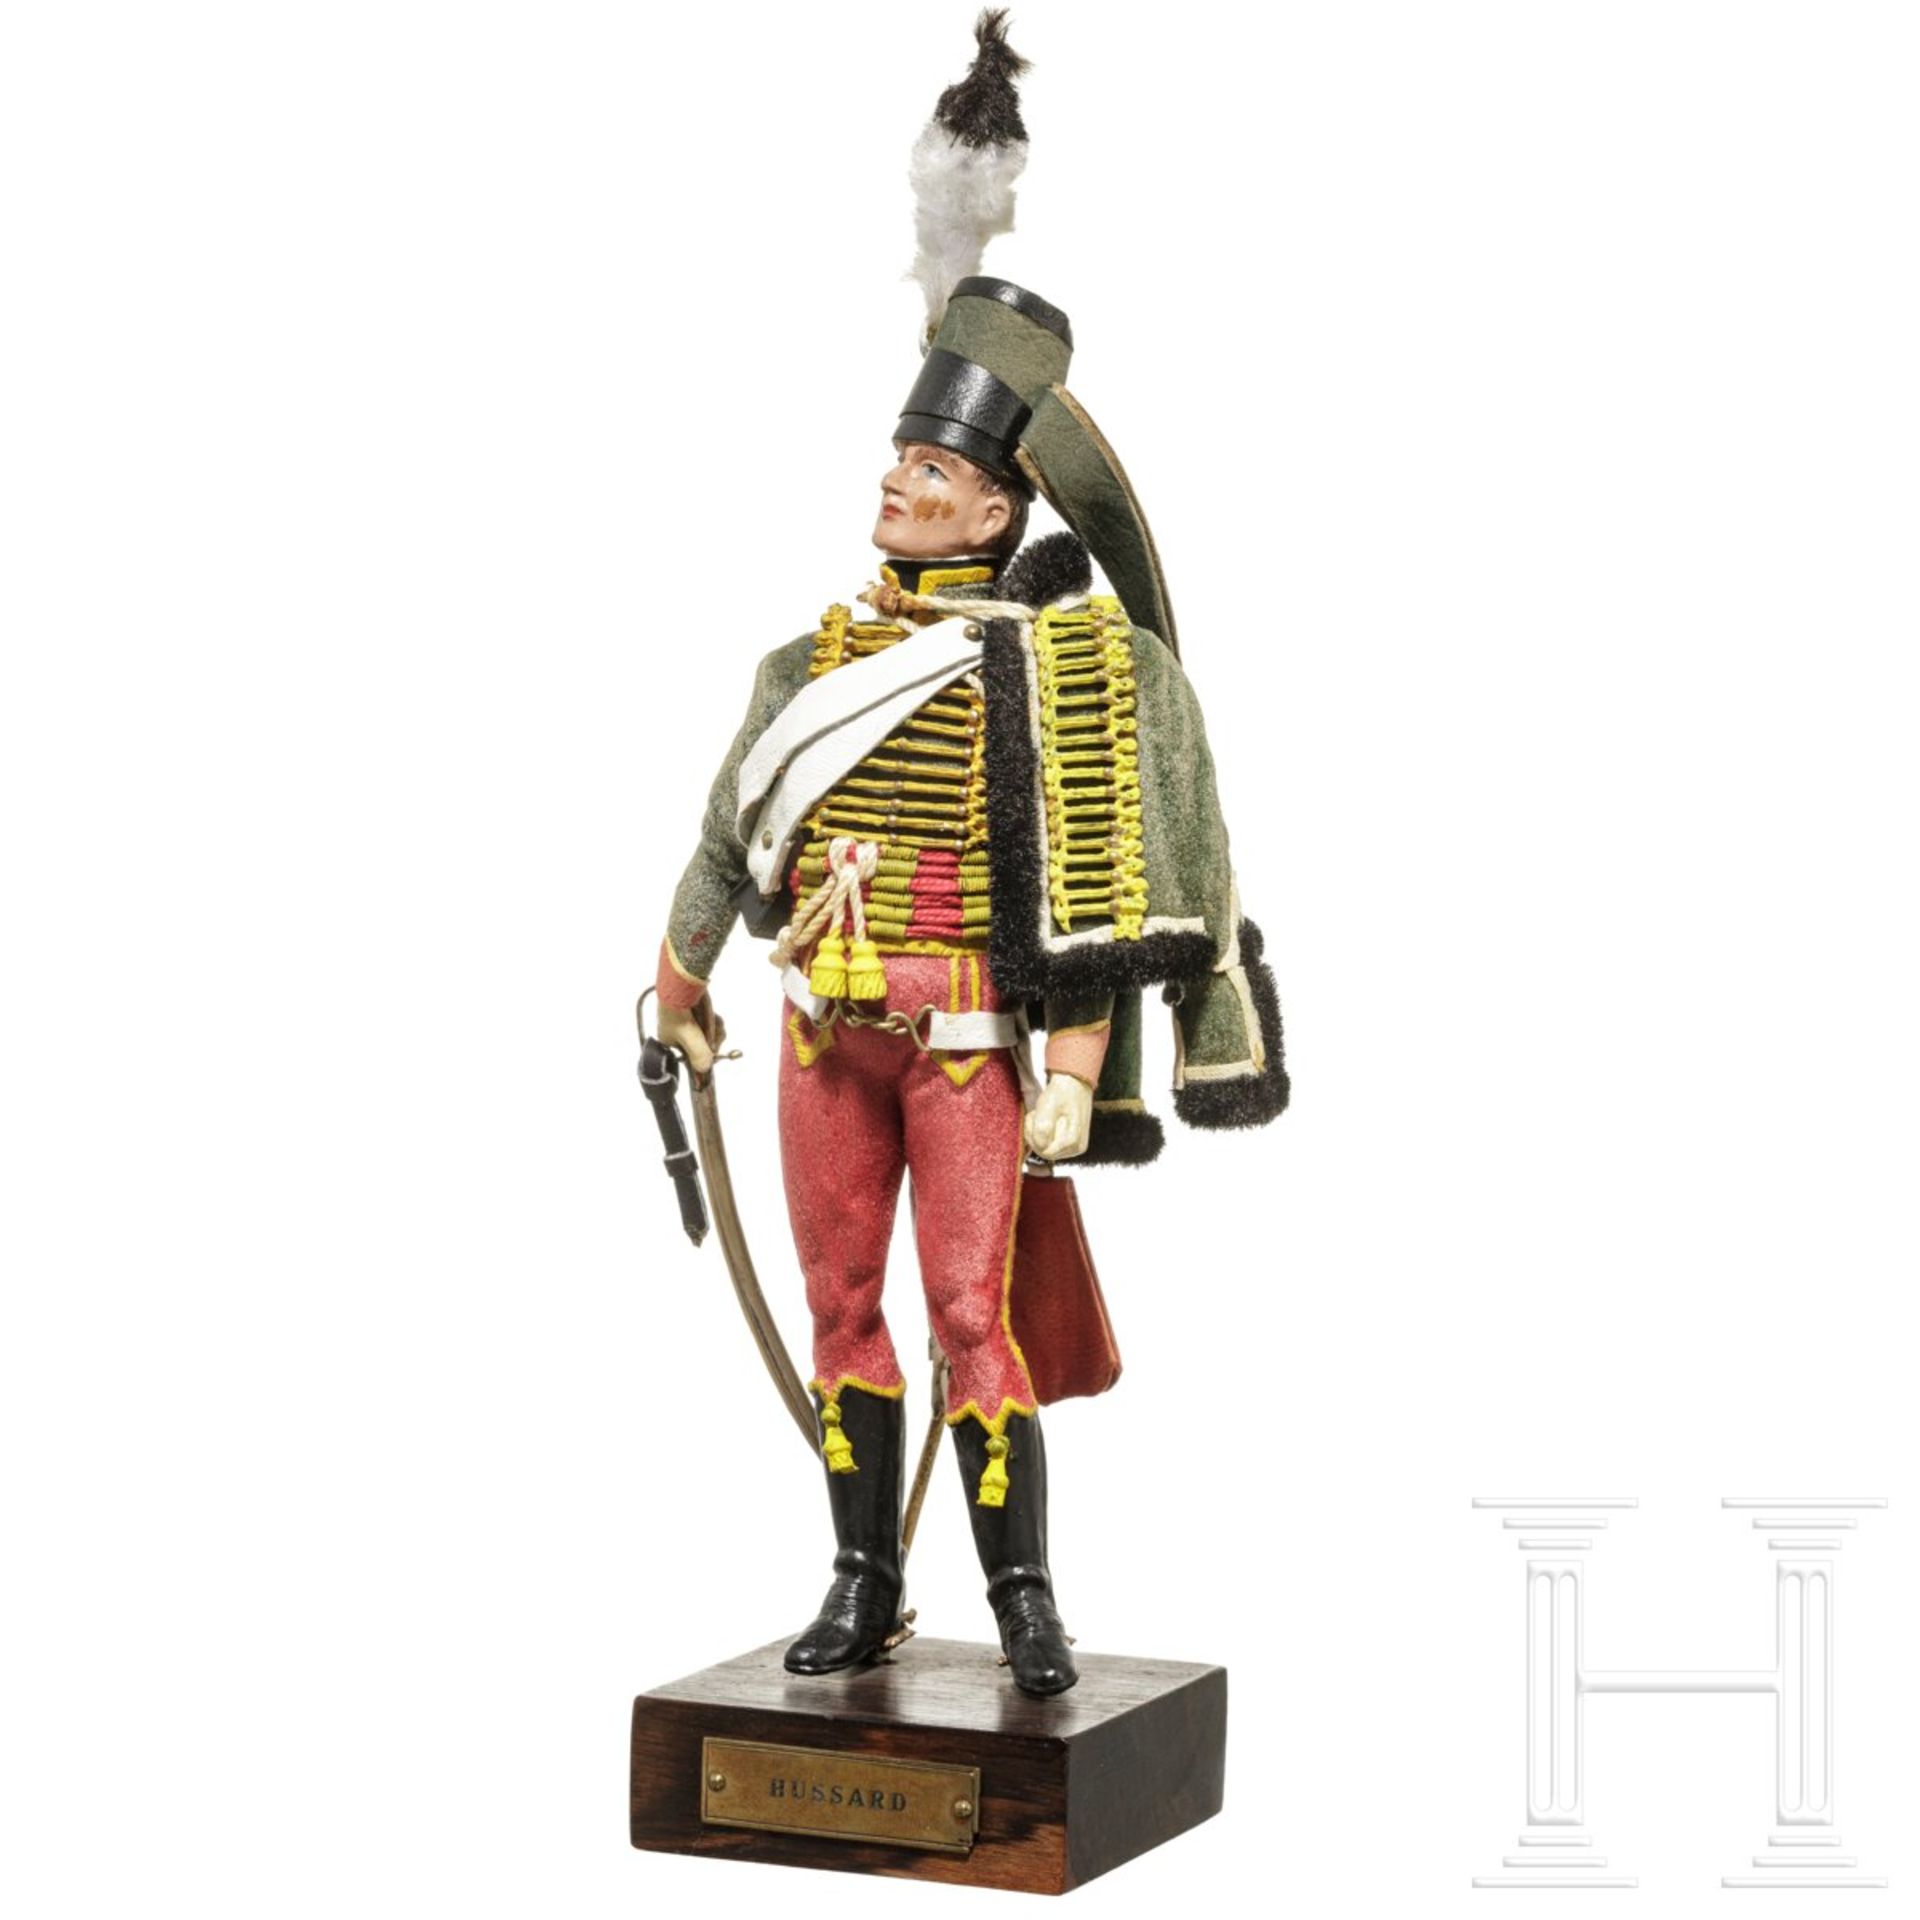 Husar um 1790 - Uniformfigur von Marcel Riffet, 20. Jhdt. - Bild 3 aus 6